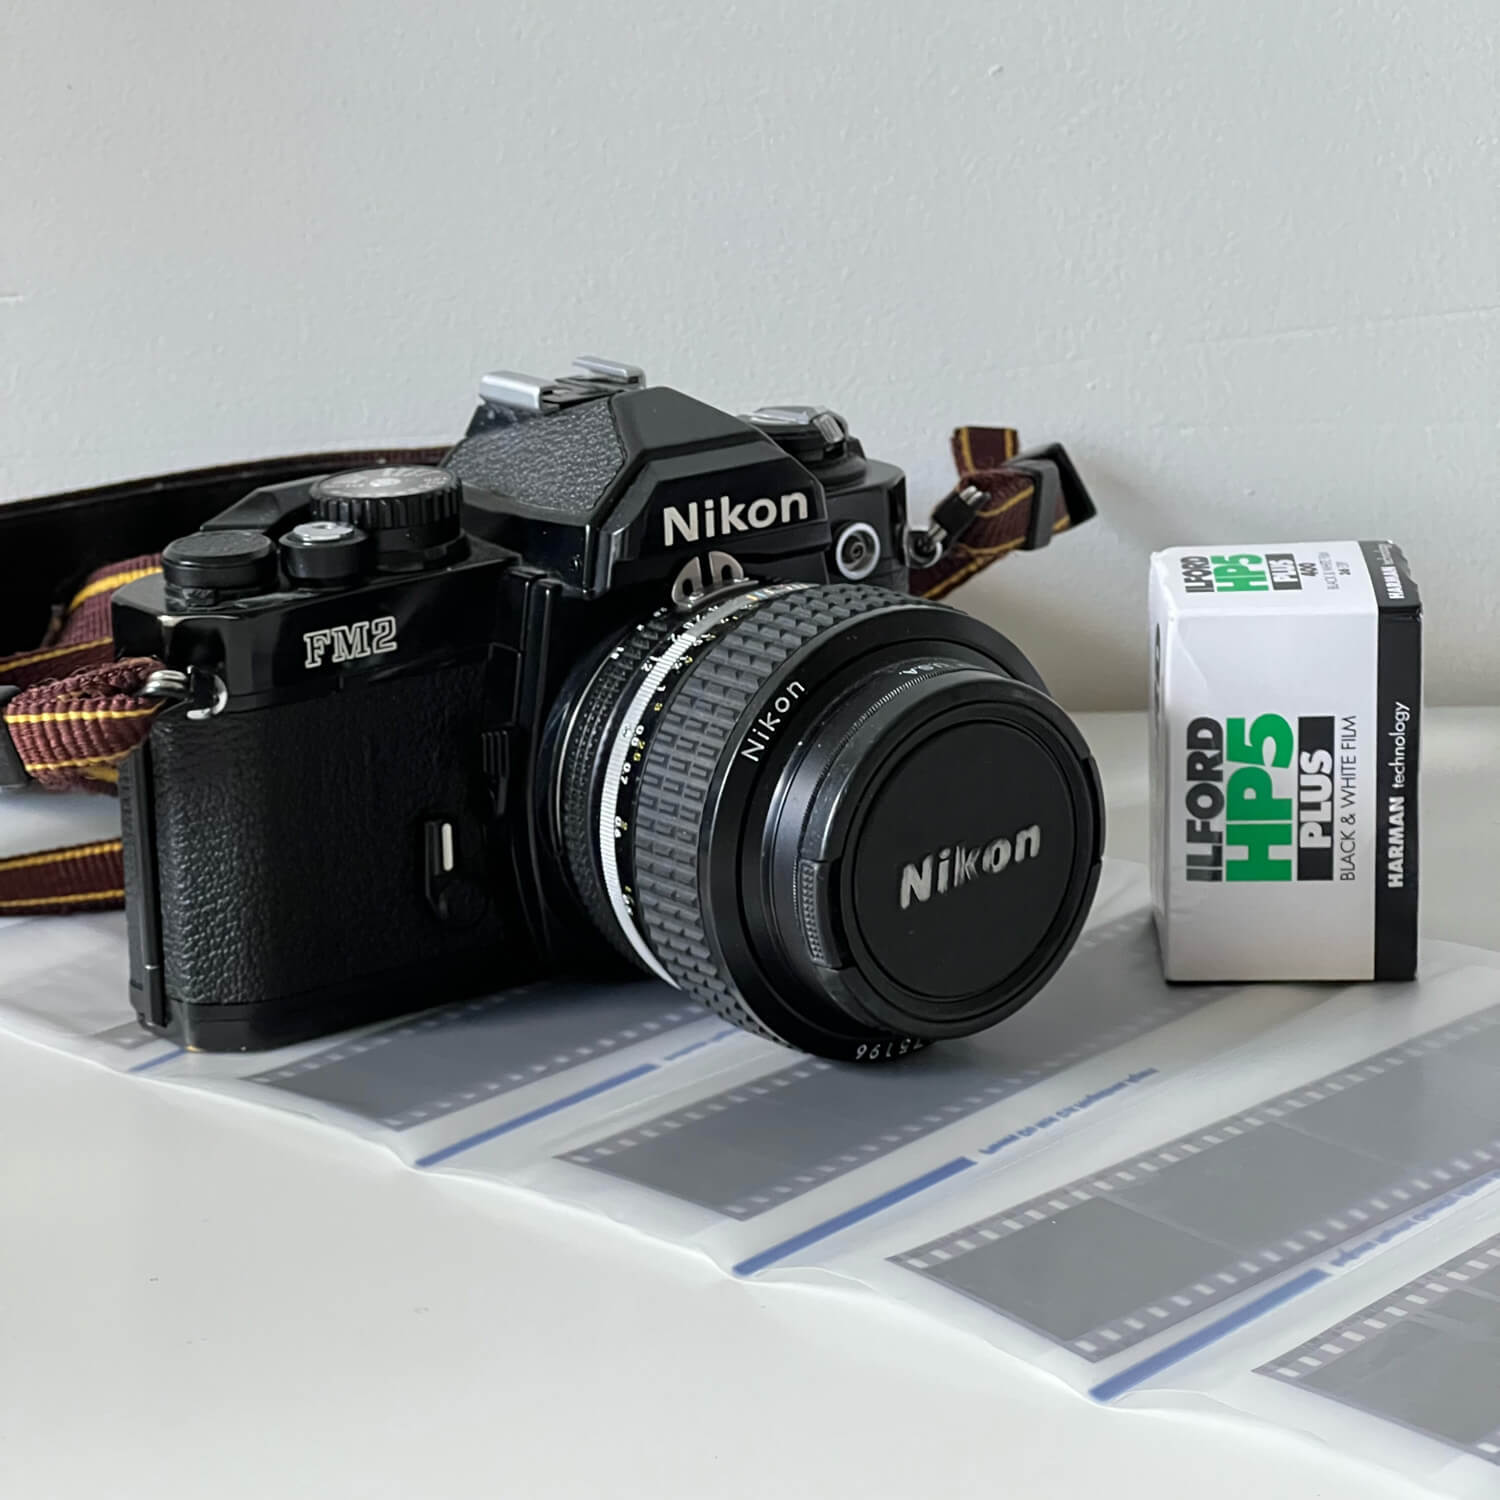 My Nikon FM2 + Nikon Nikkor 50mm f/1.2), Ray Quy